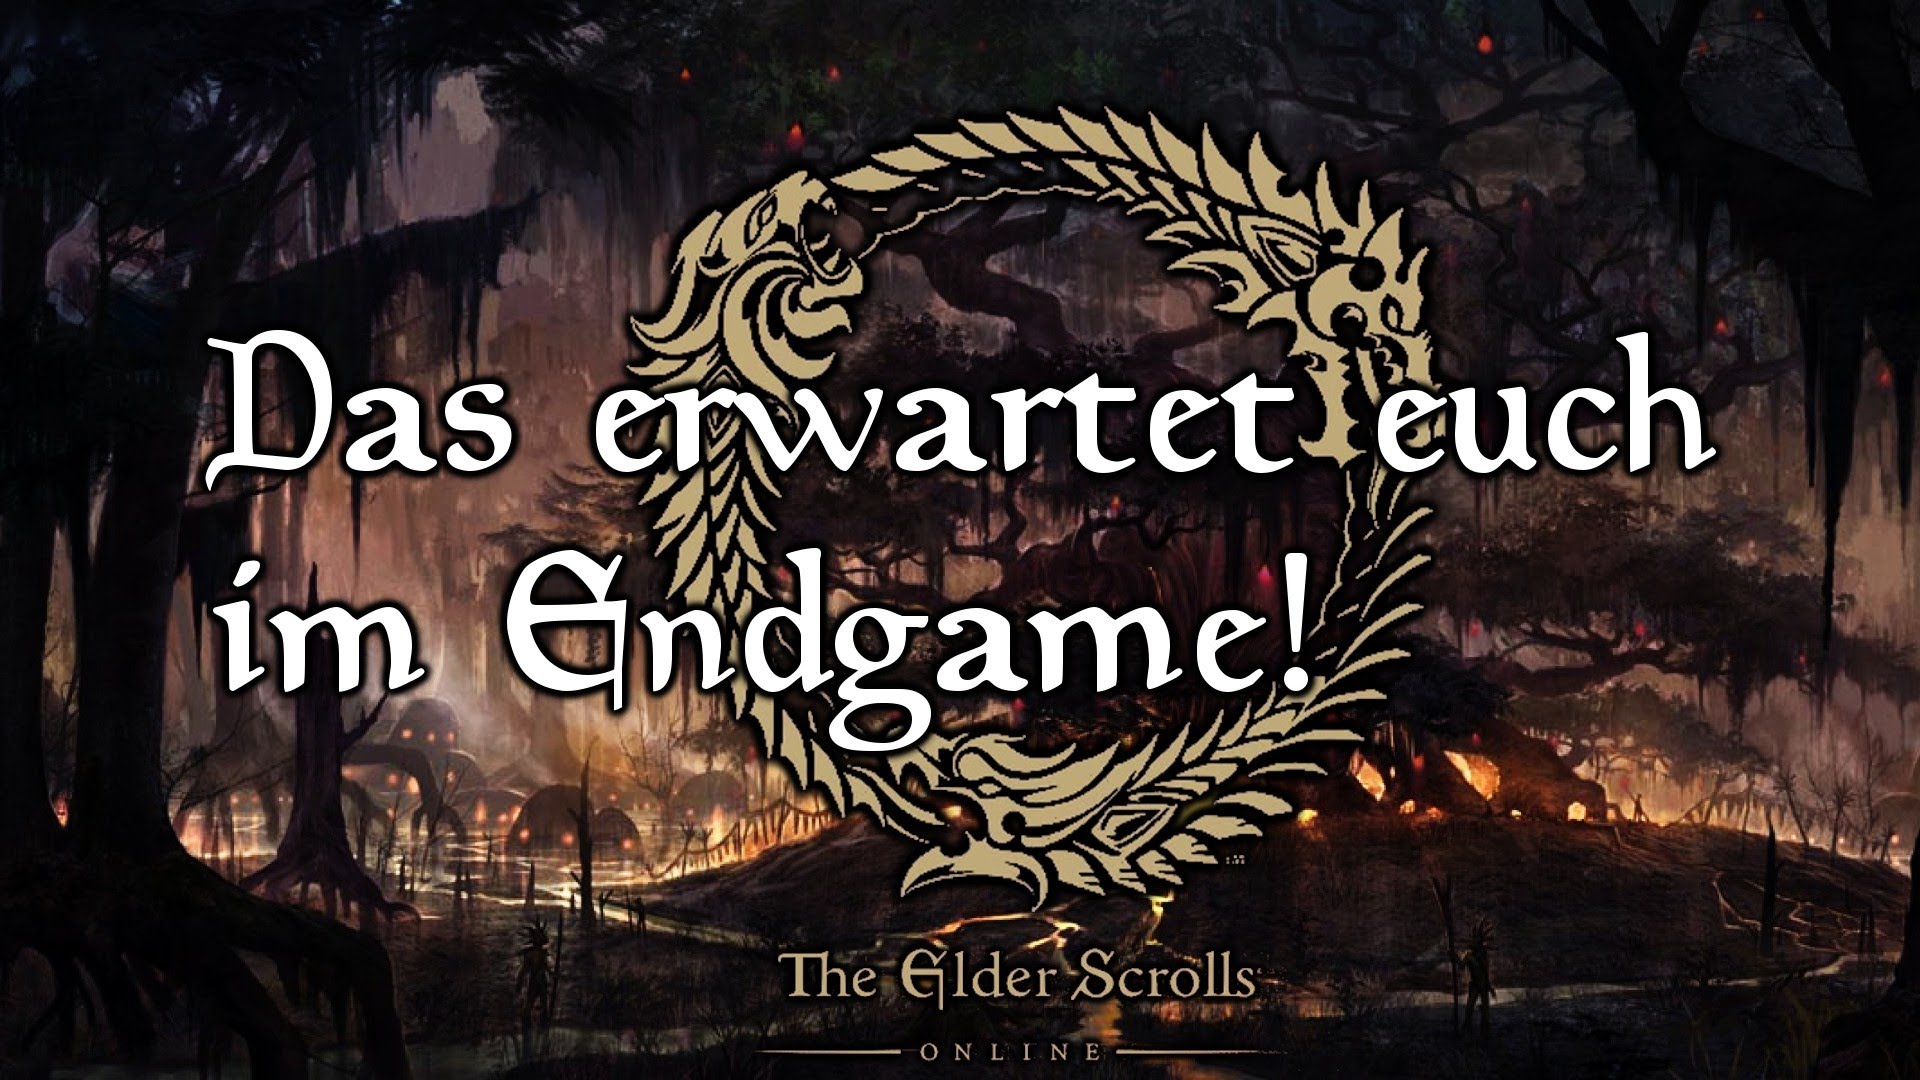 The Elder Scrolls Online: Endgame